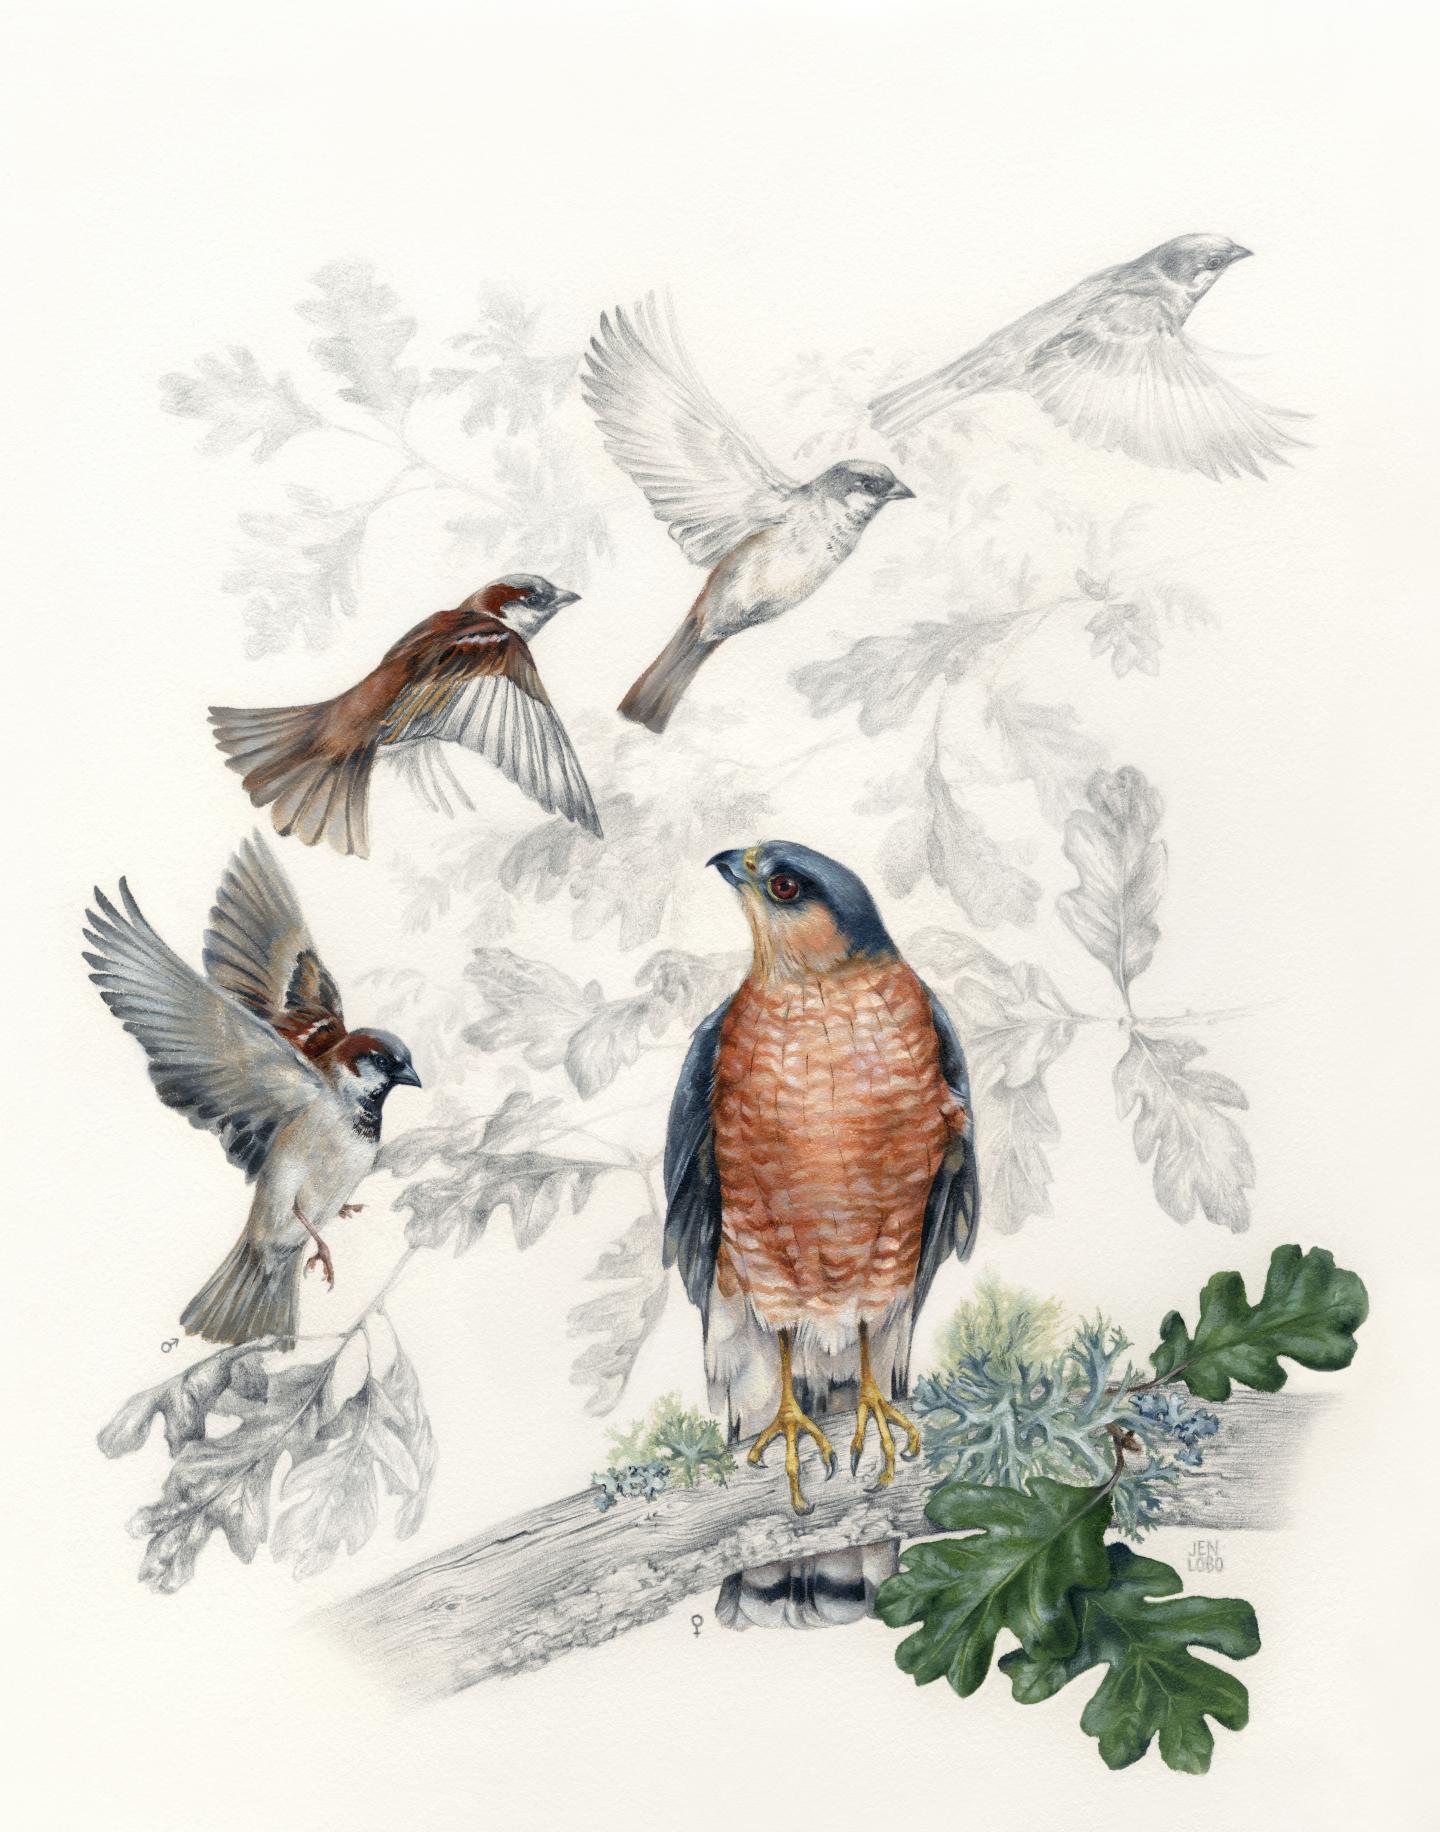 Artwork: Hawk and Sparrows